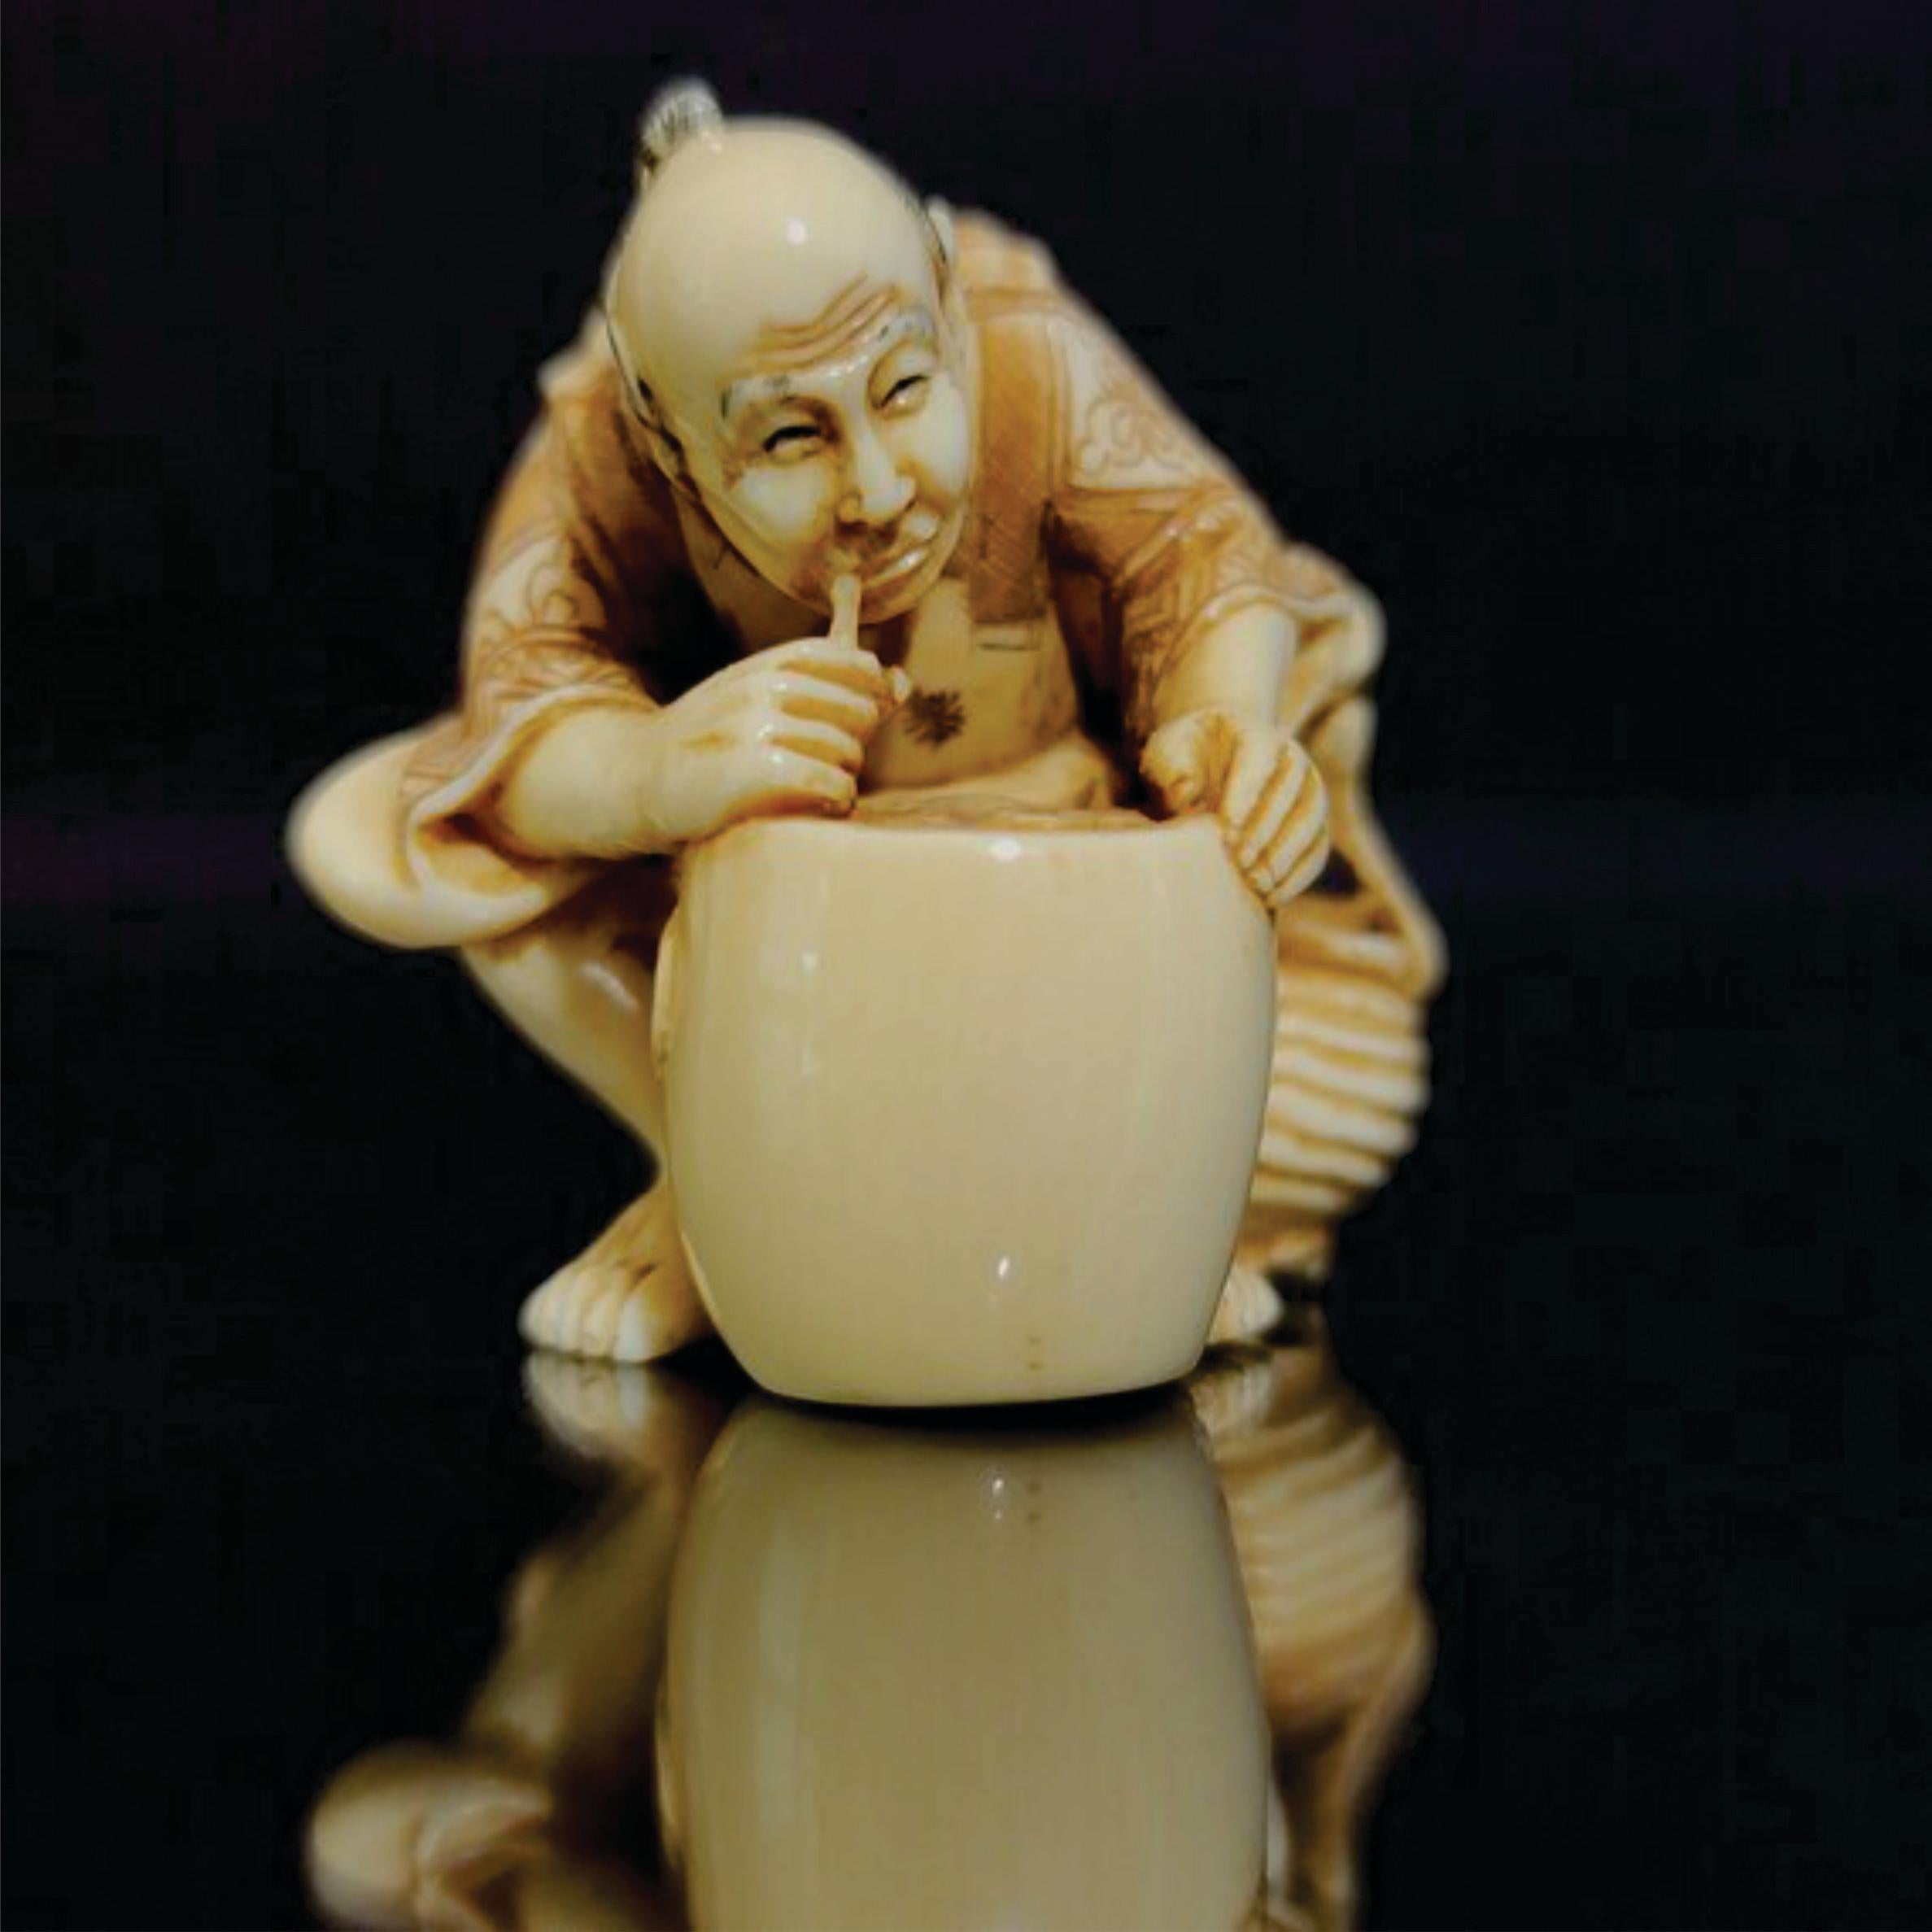 Netsuke Figure japonaise décorée en polychrome et sculptée à la main, signée par Yoshitomo, de la période Meiji. Ric.NA004

Cette figurine en ivoire véritablement sculptée à la main, un vieil homme tenant une paille et trempant une sorte de liquide